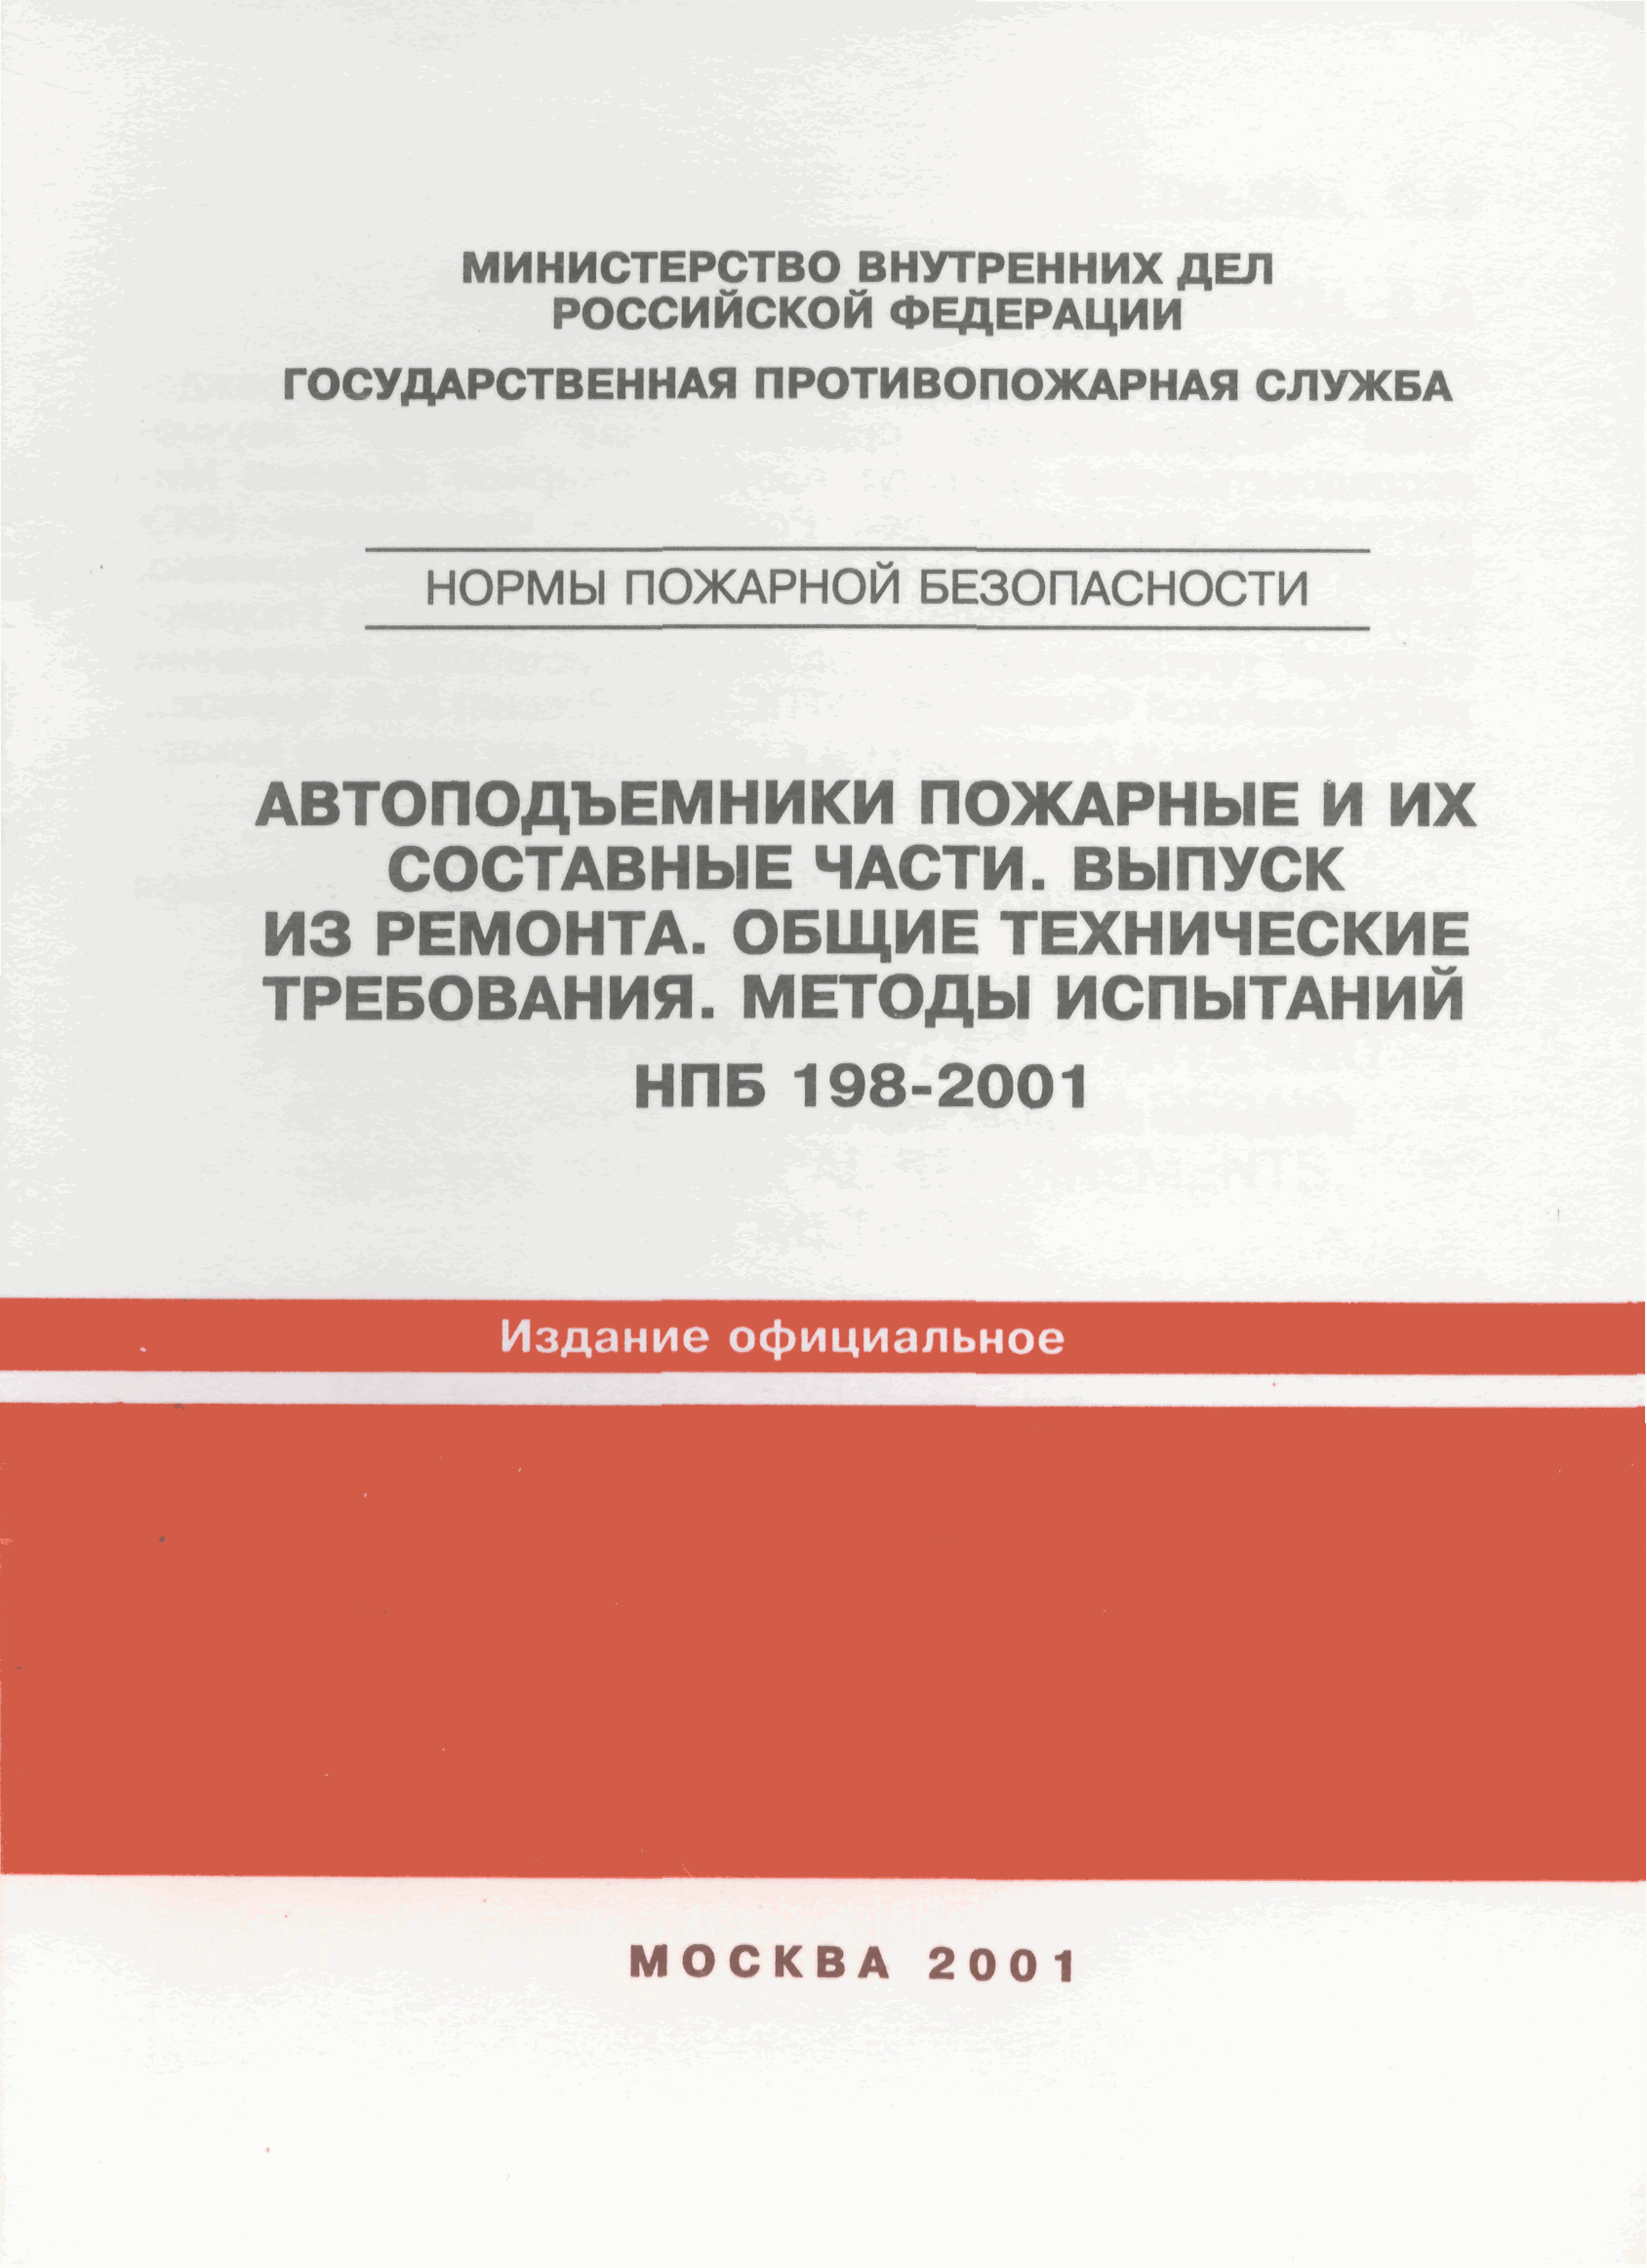 НПБ 198-2001